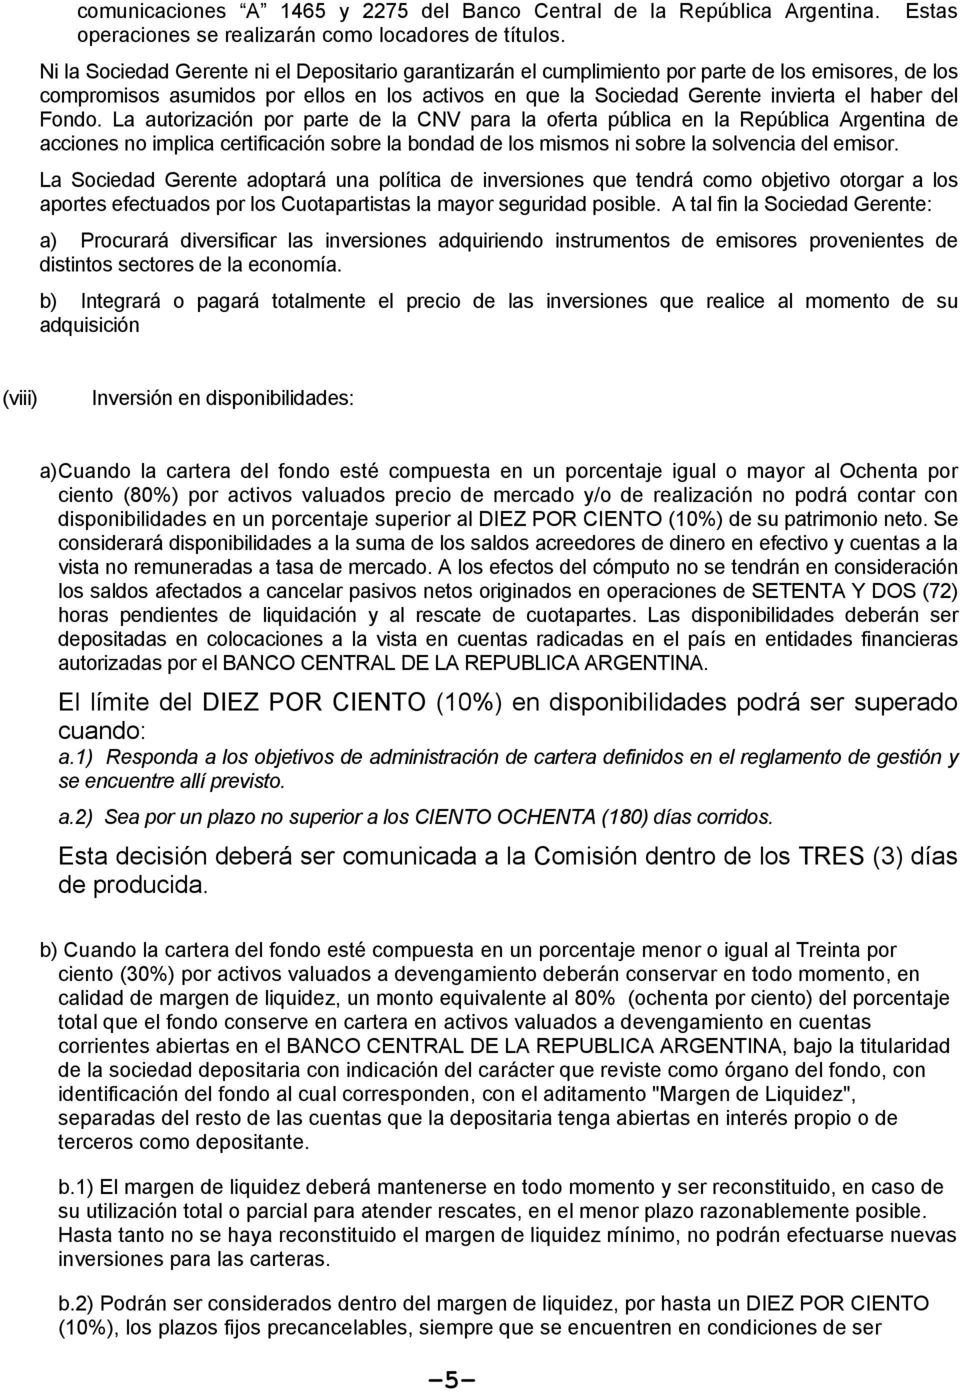 Fondo. La autorización por parte de la CNV para la oferta pública en la República Argentina de acciones no implica certificación sobre la bondad de los mismos ni sobre la solvencia del emisor.